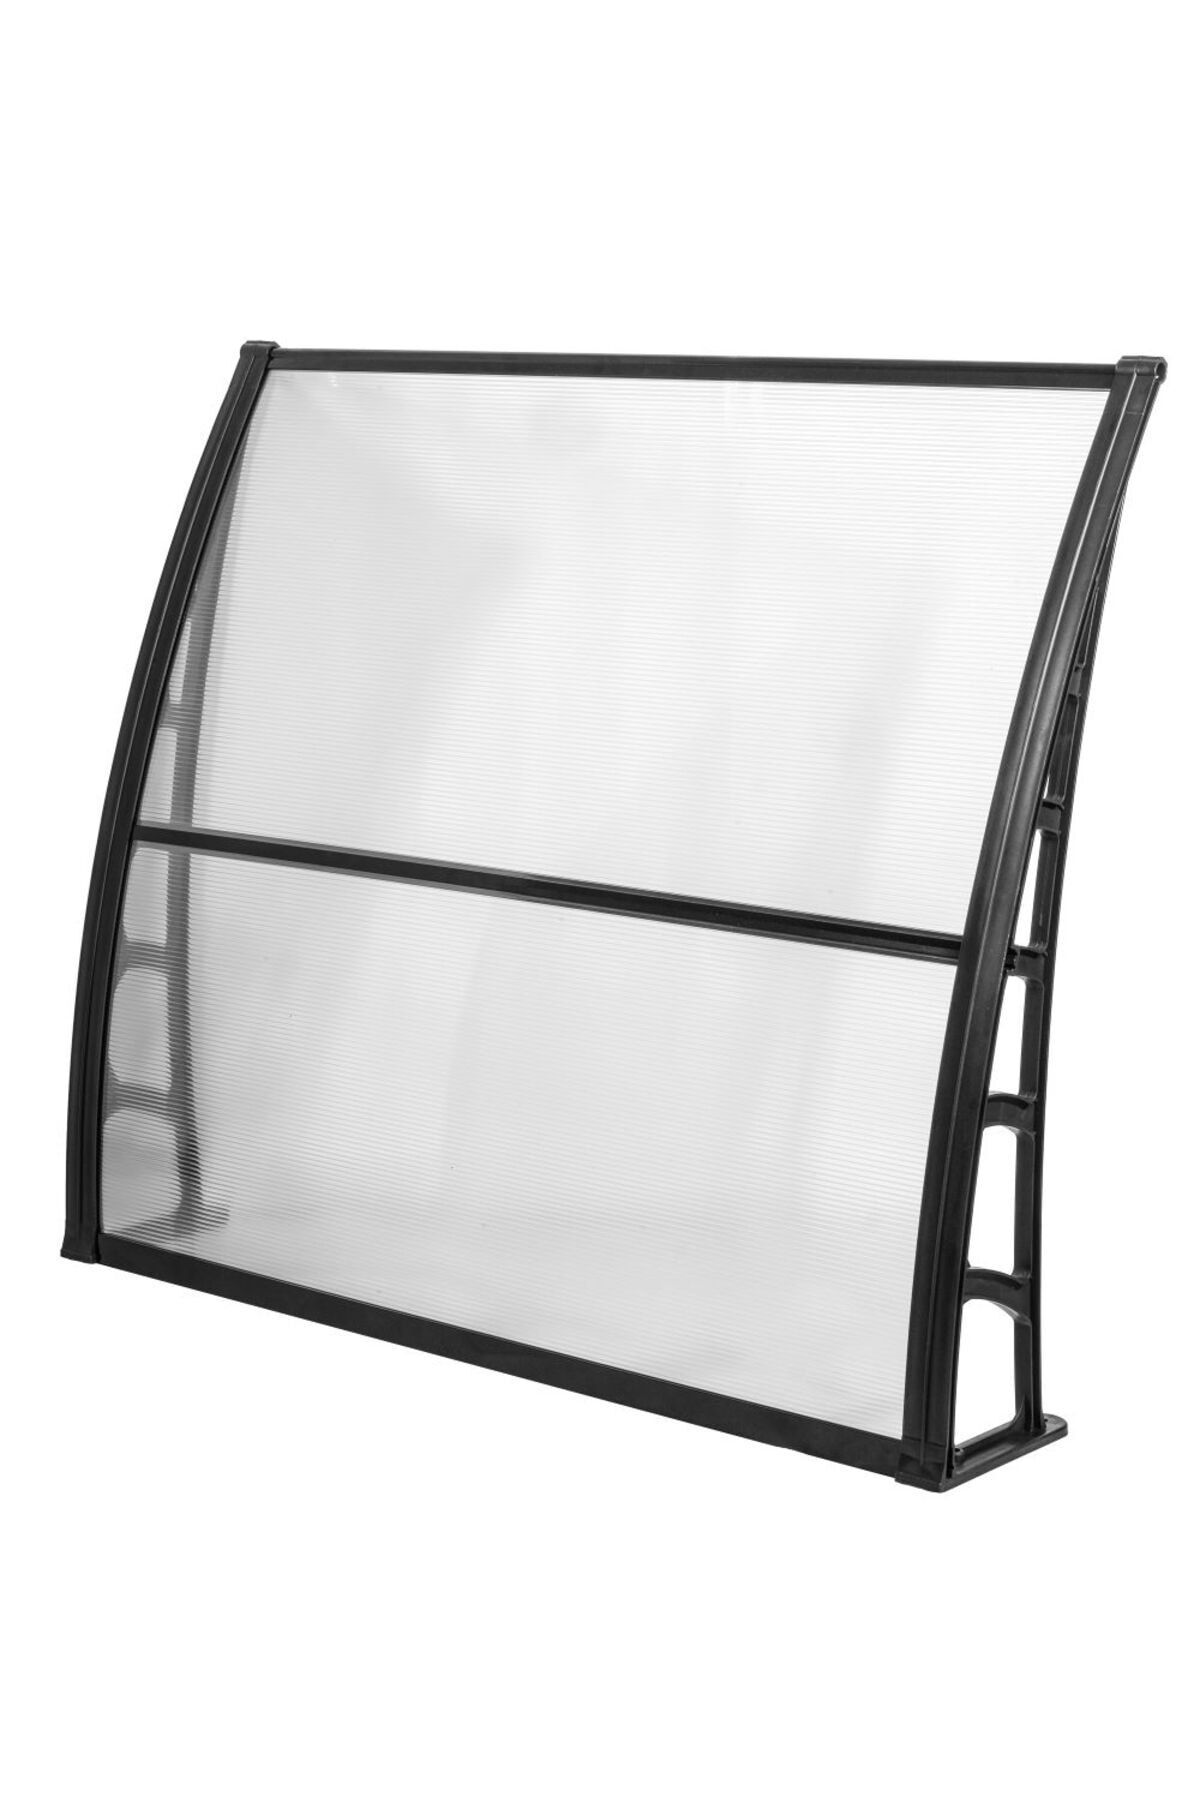 Genel Markalar LUPIN Kapı Pencere Üstü Pratik Sundurma 105x120 cm - Şeffaf